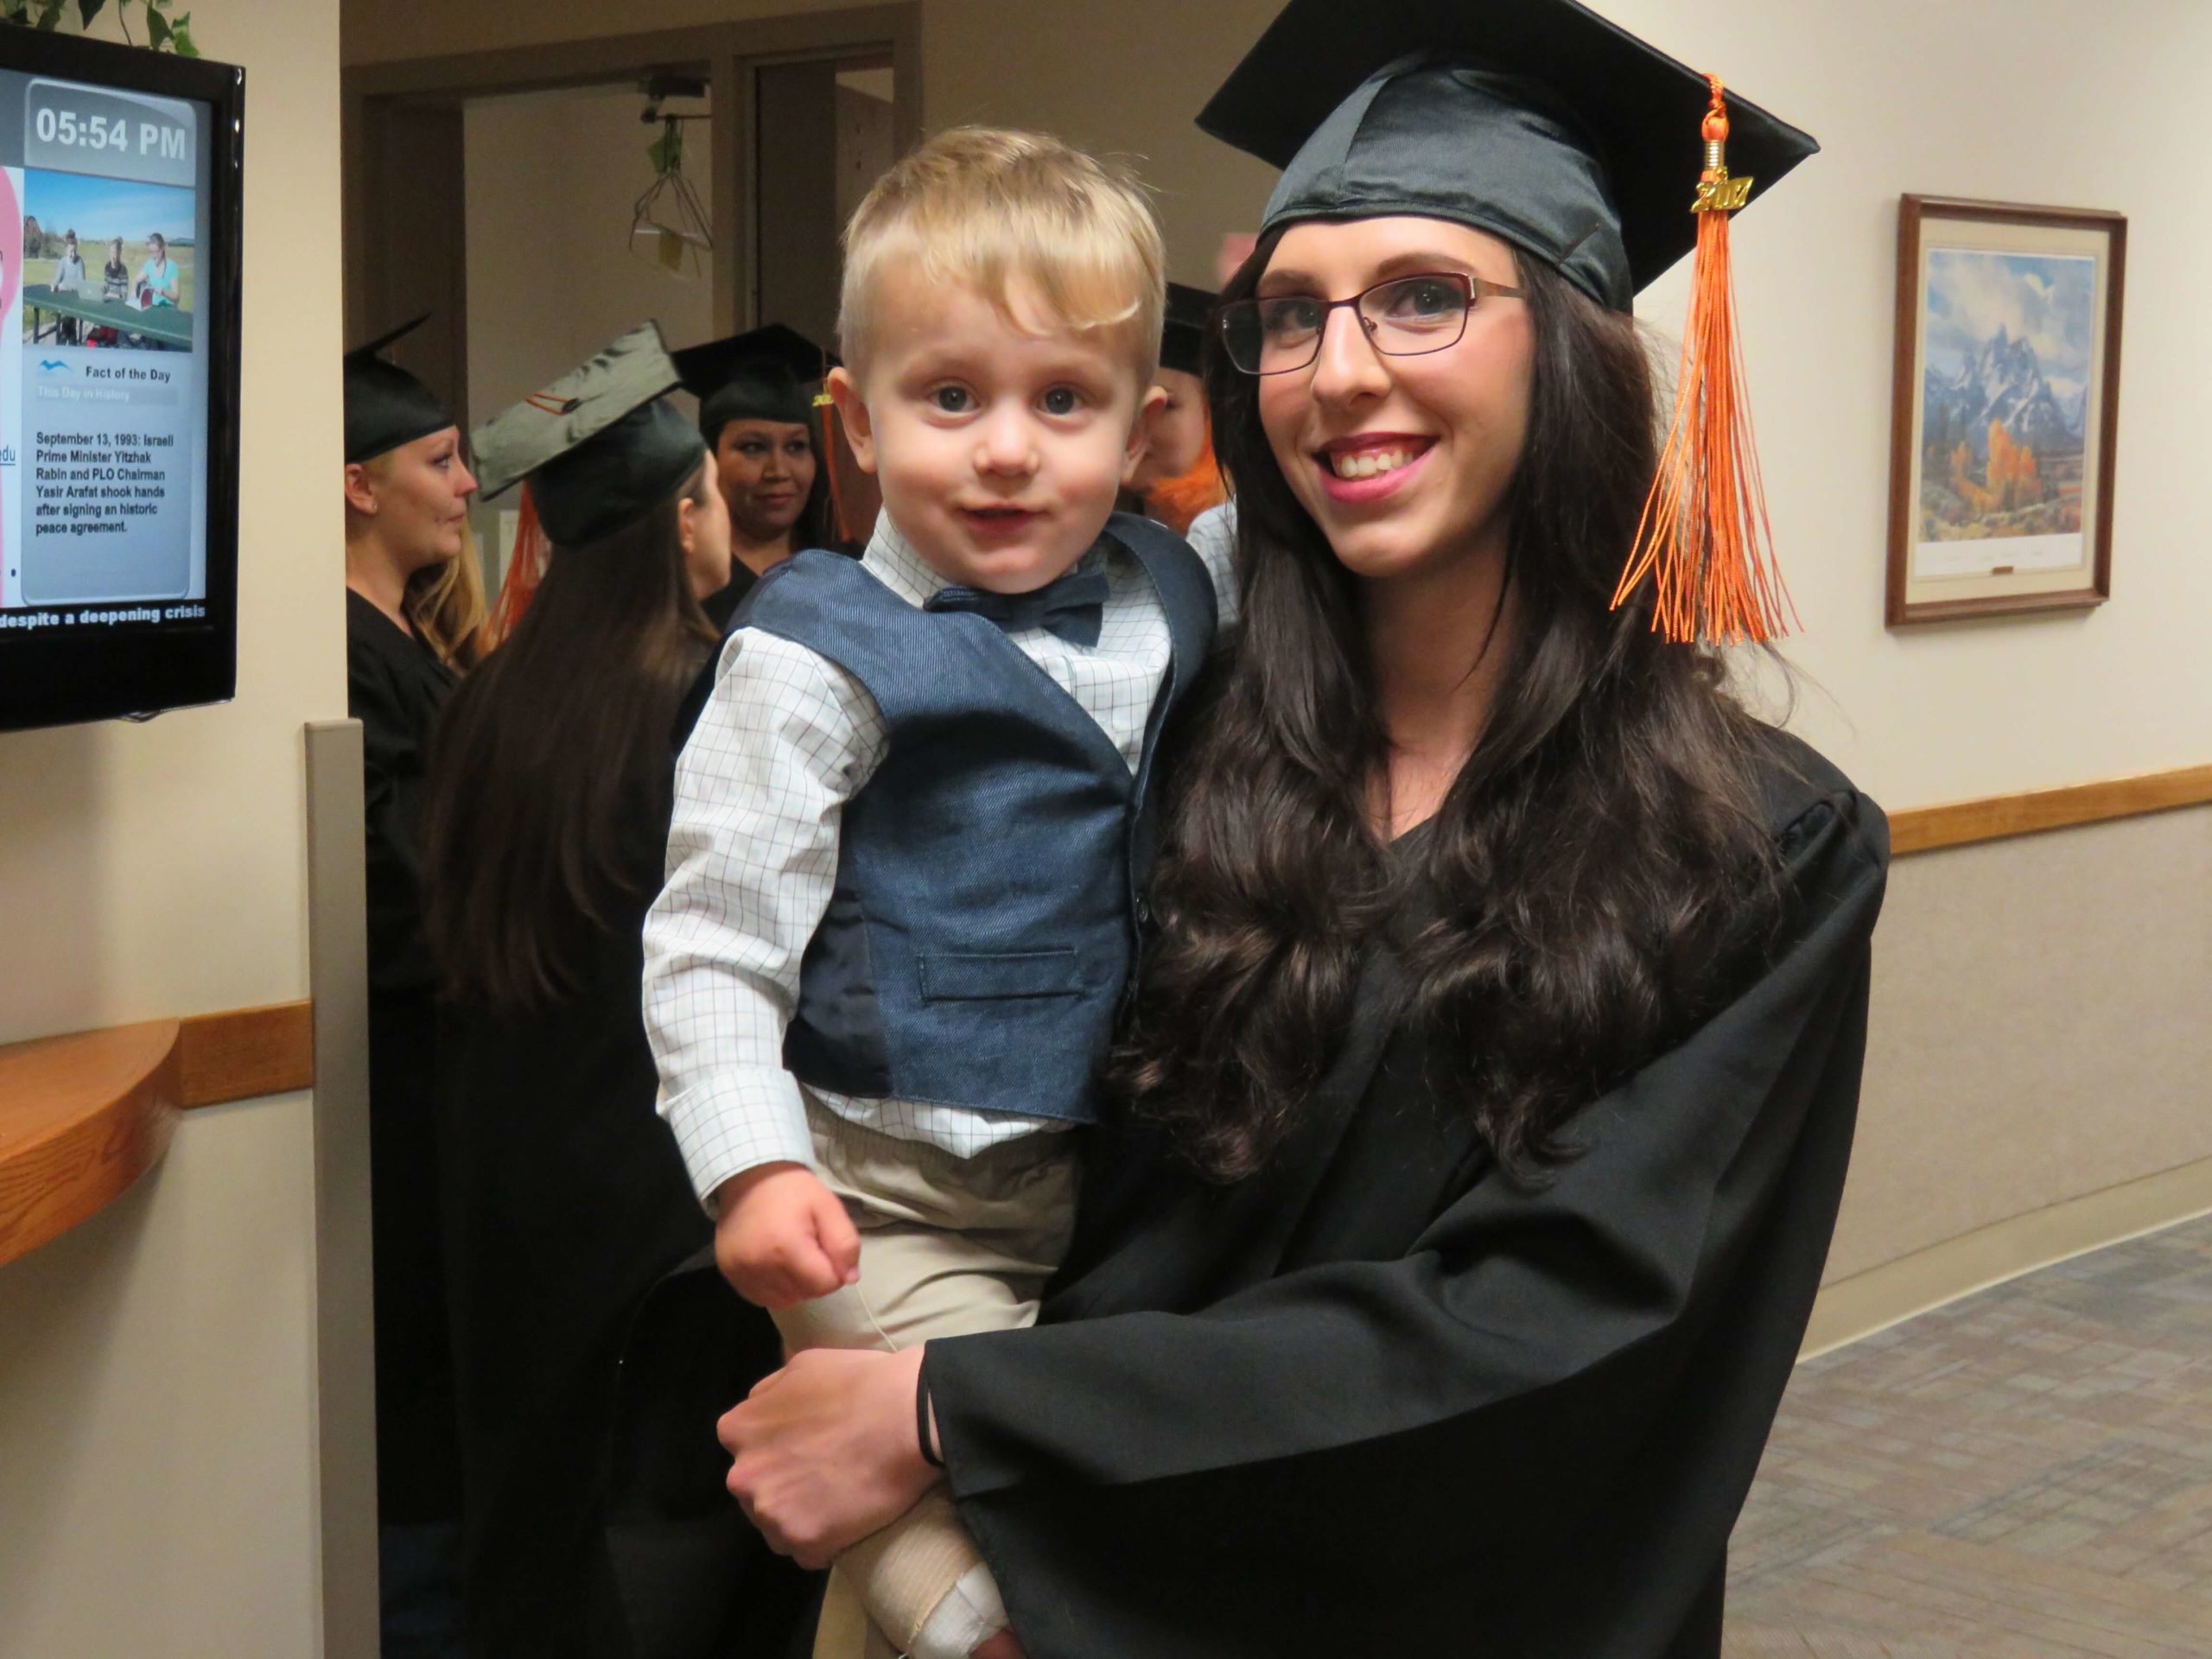 Mom graduates while holding child